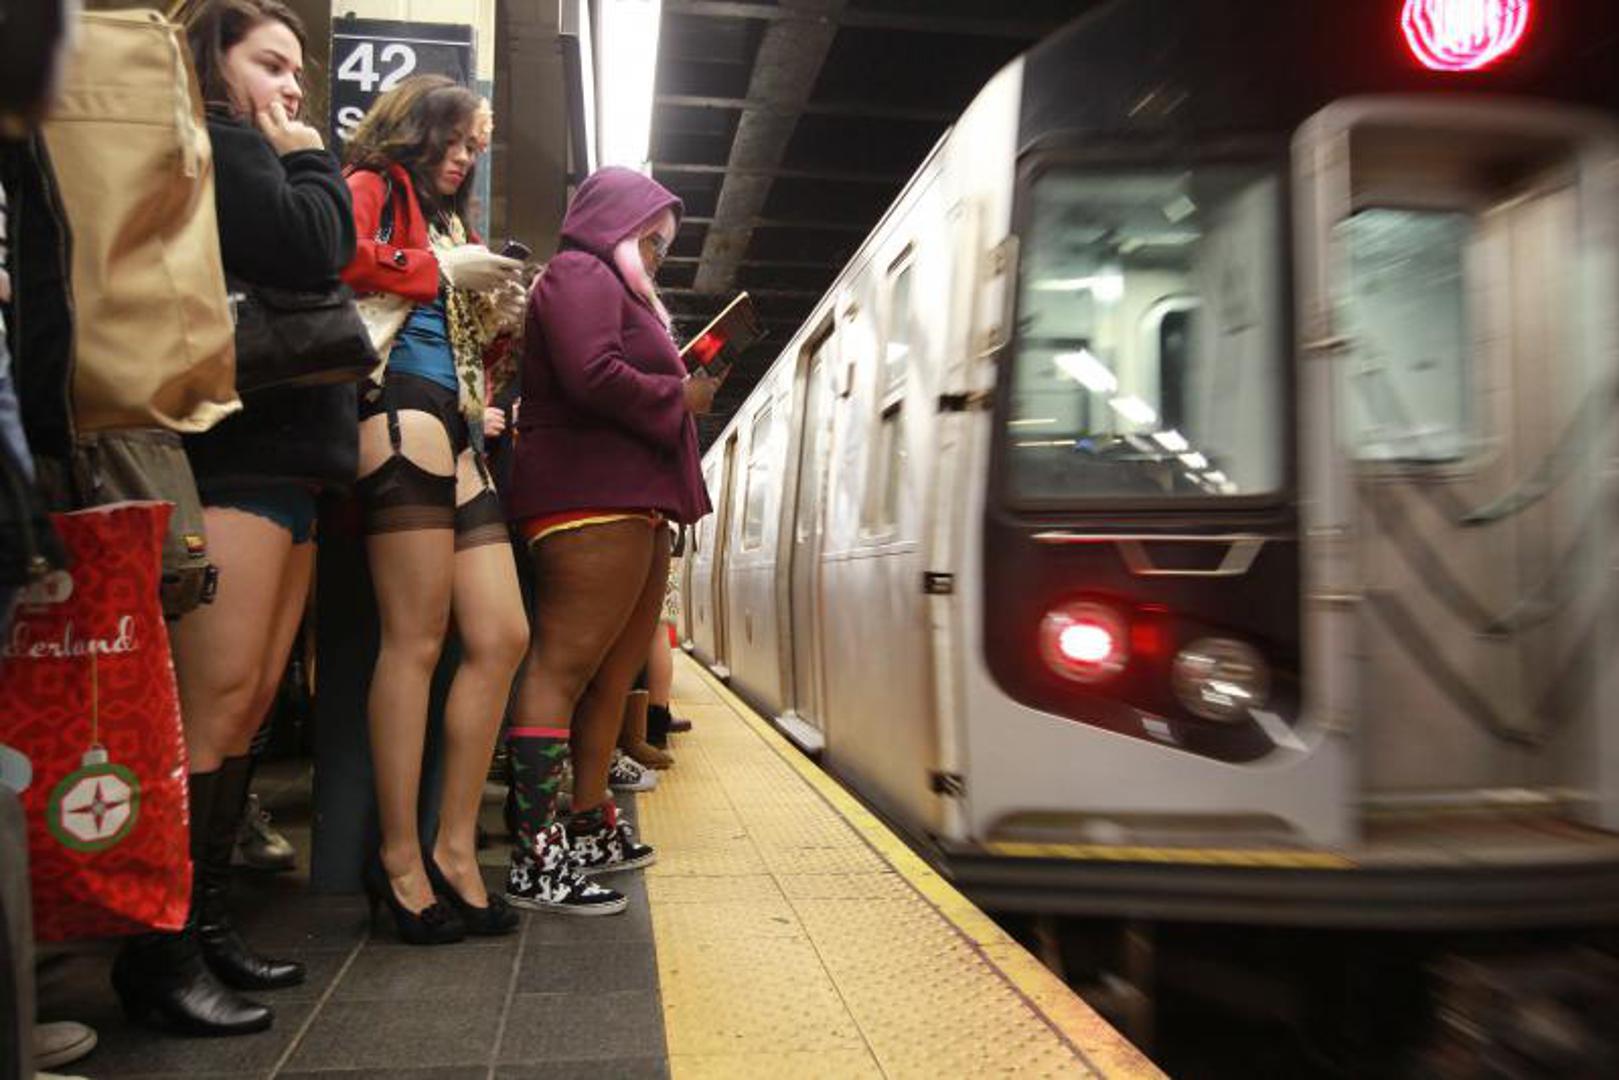 Без штанов домашнее. В метро без штанов. Женщины в юбках в метро. Дама в метро. Женщины в колготках в метро.